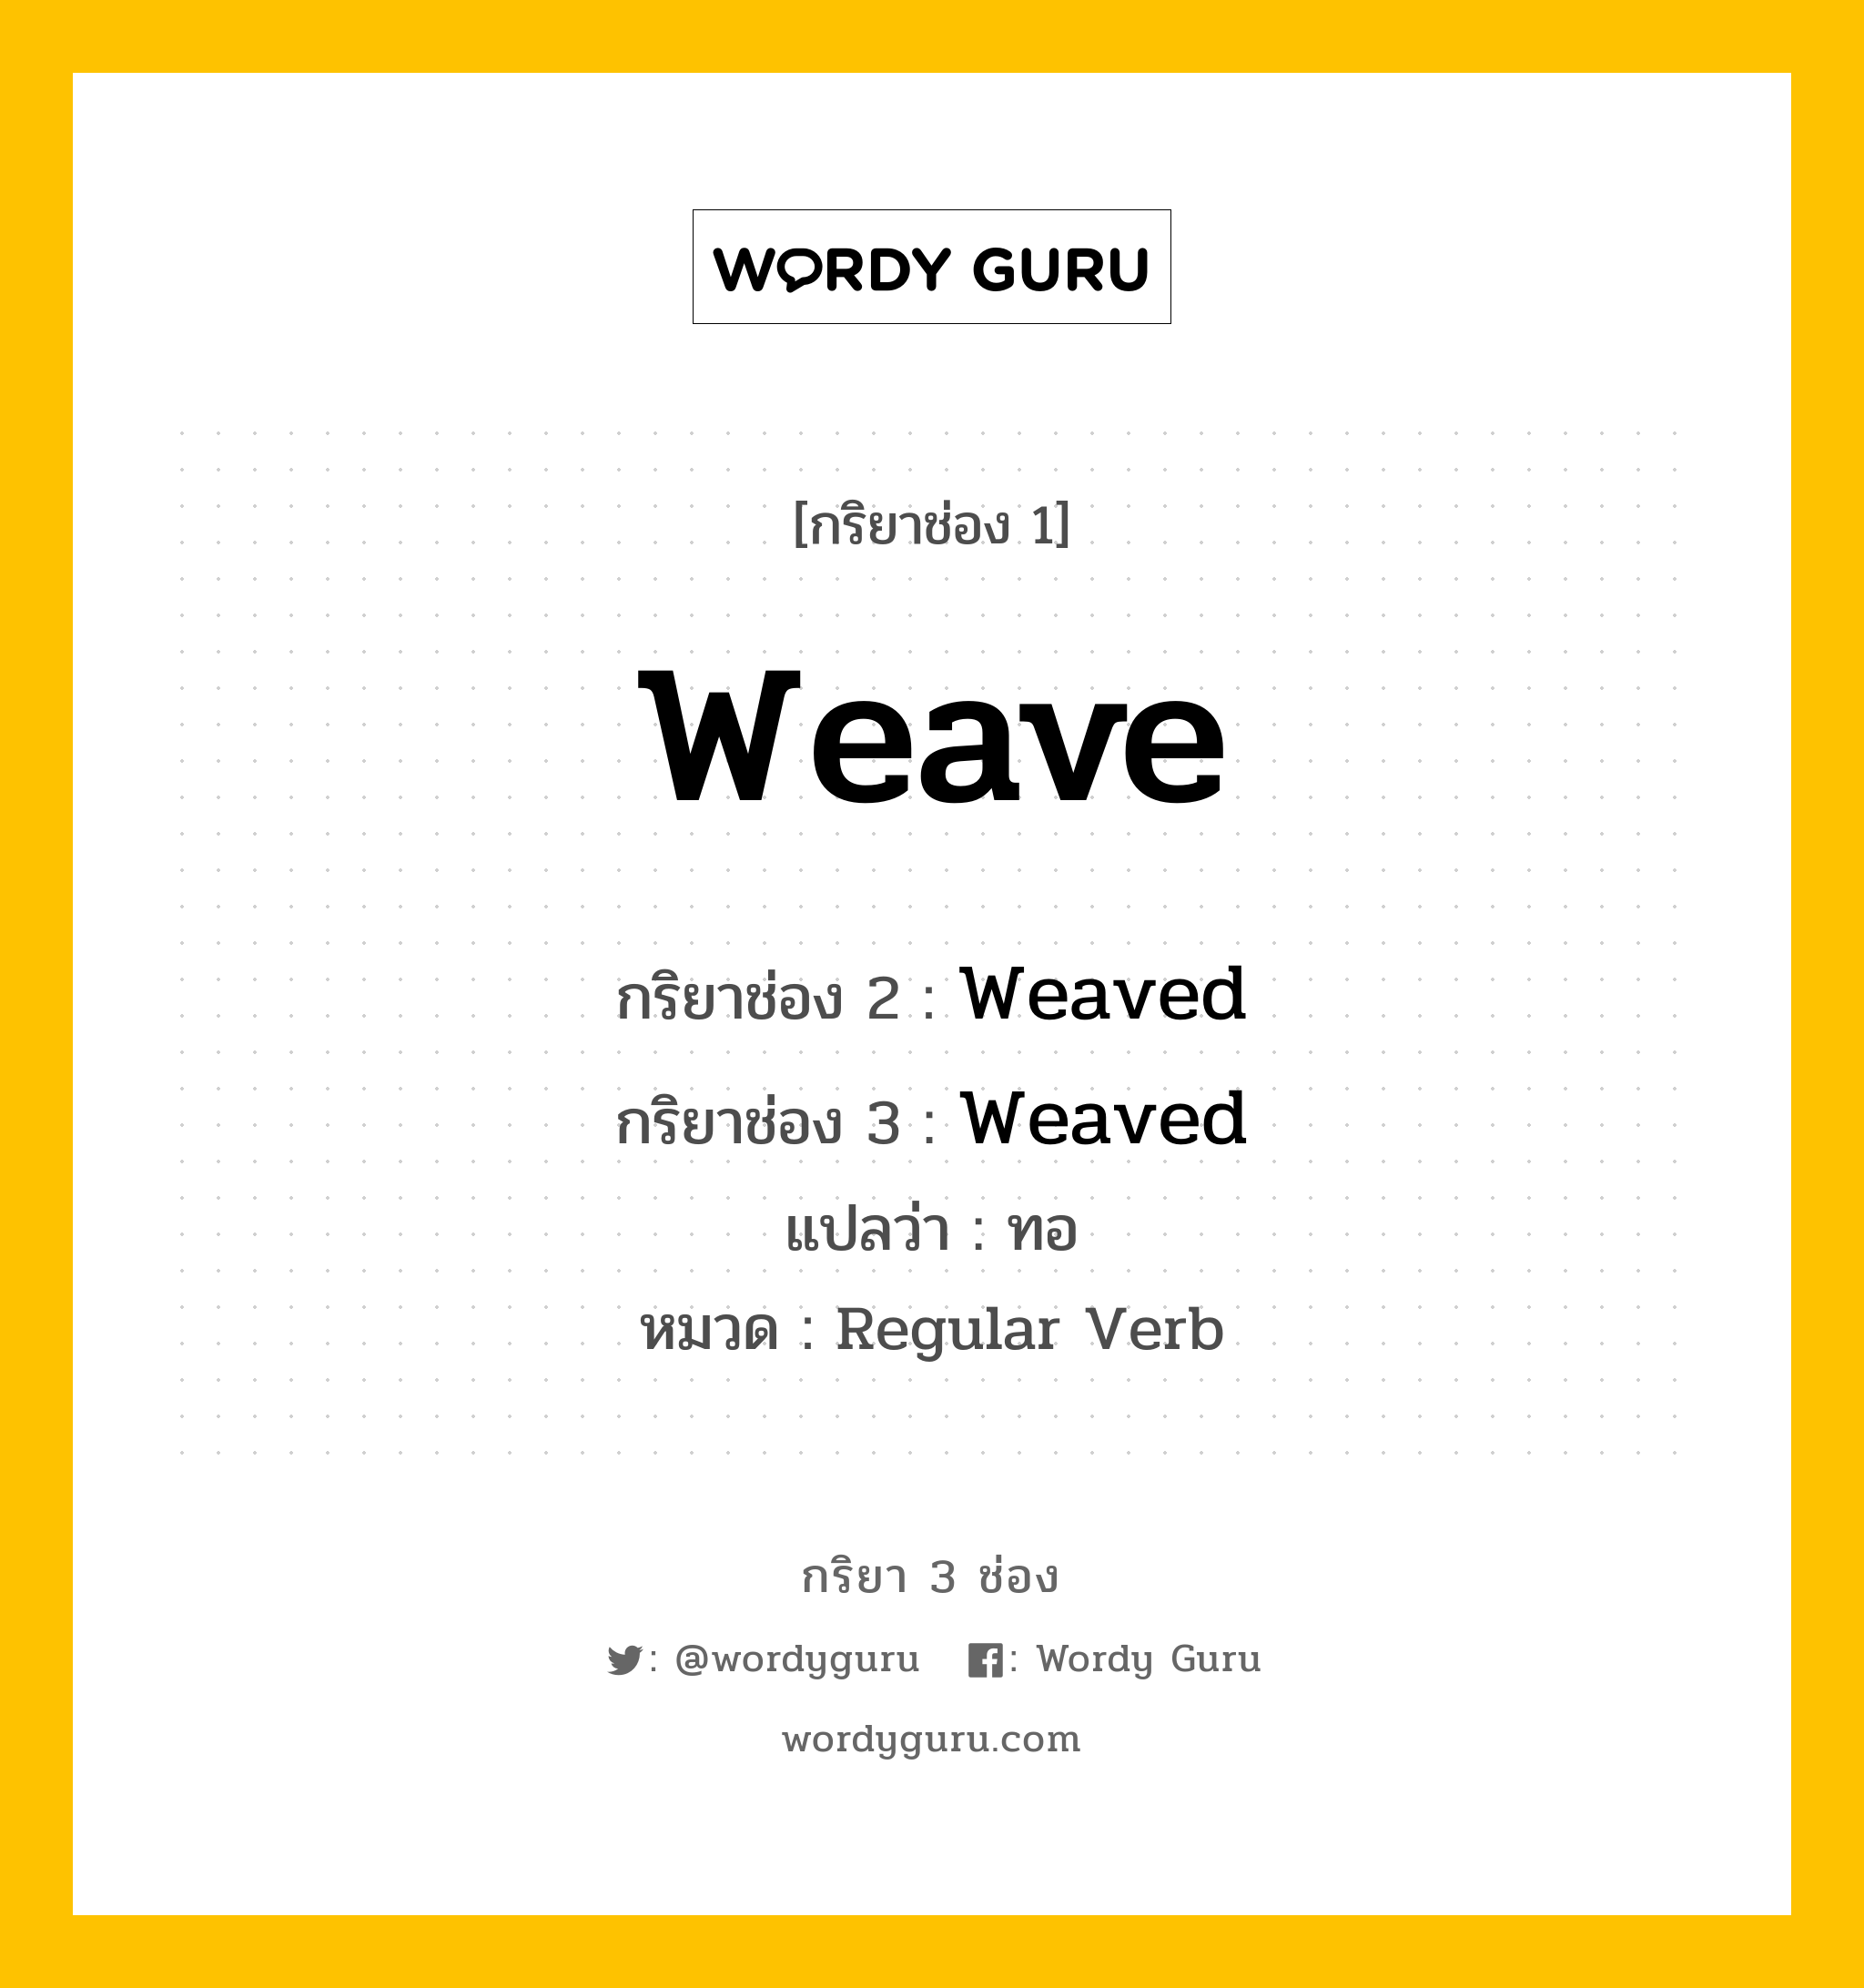 กริยา 3 ช่อง: Weave ช่อง 2 Weave ช่อง 3 คืออะไร, กริยาช่อง 1 Weave กริยาช่อง 2 Weaved กริยาช่อง 3 Weaved แปลว่า ทอ หมวด Regular Verb มีหลายแบบ y หมวด Regular Verb